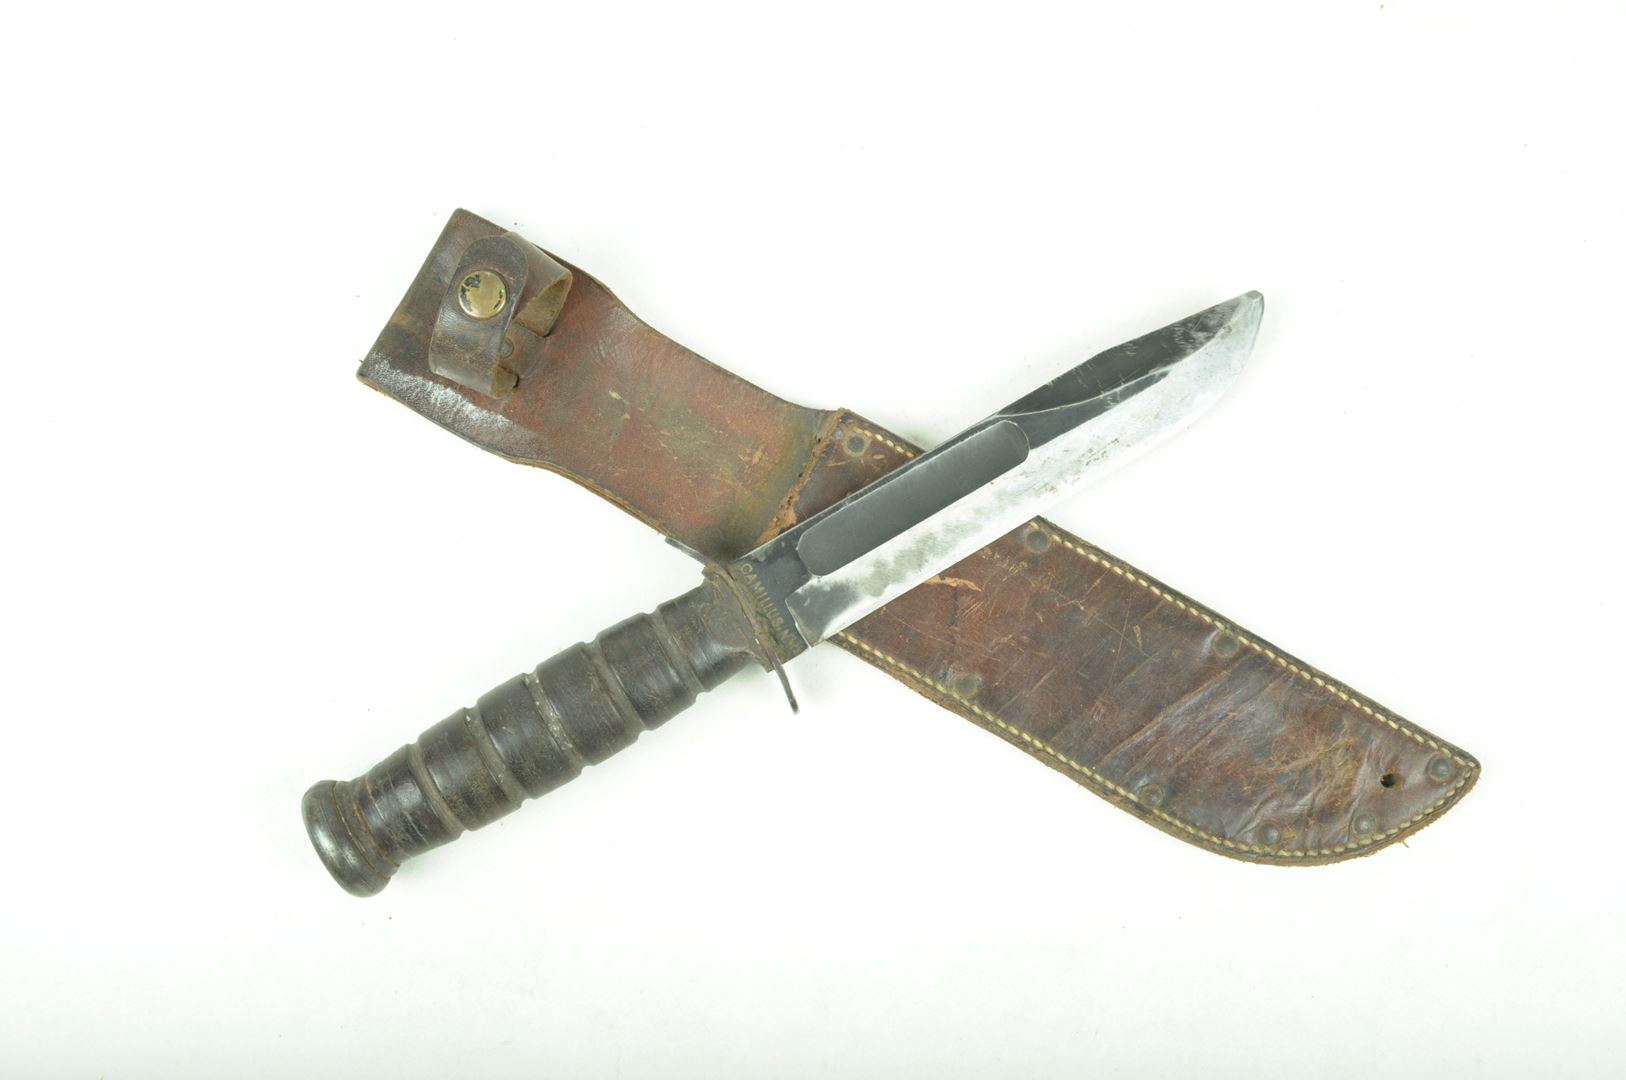 Couteau Camillus de l'US Army Air Force WWII - Couteaux pliants